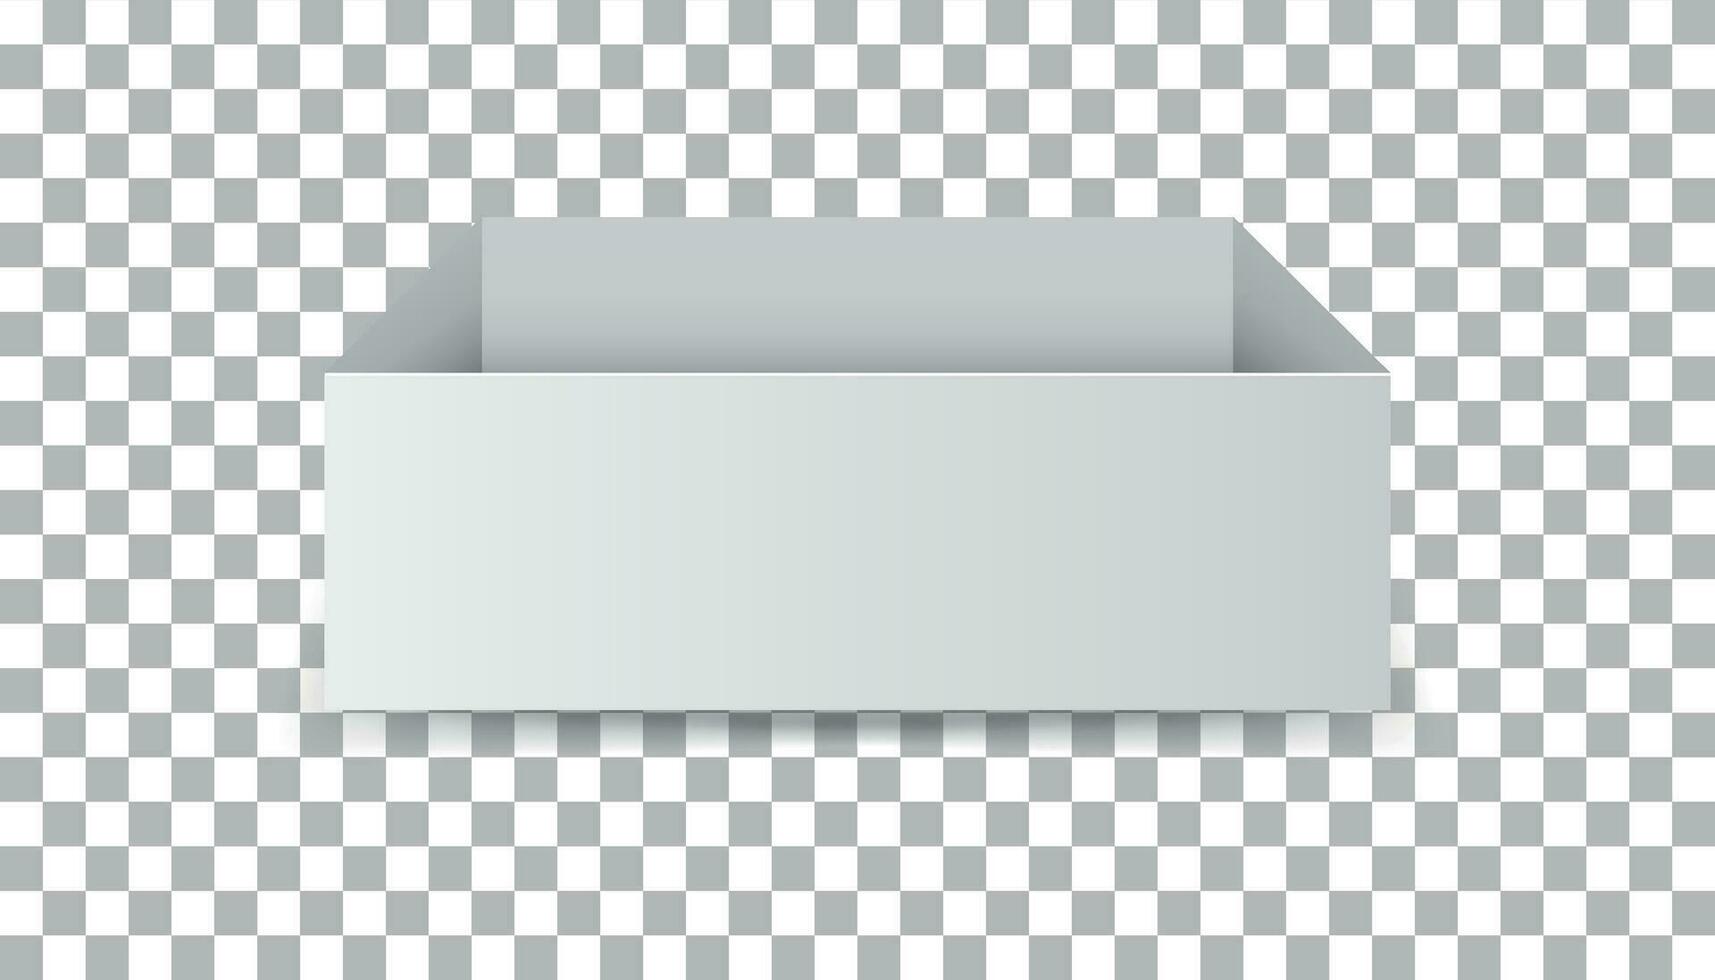 blanco cartulina paquete caja. vector ilustración aislado en aislado antecedentes.